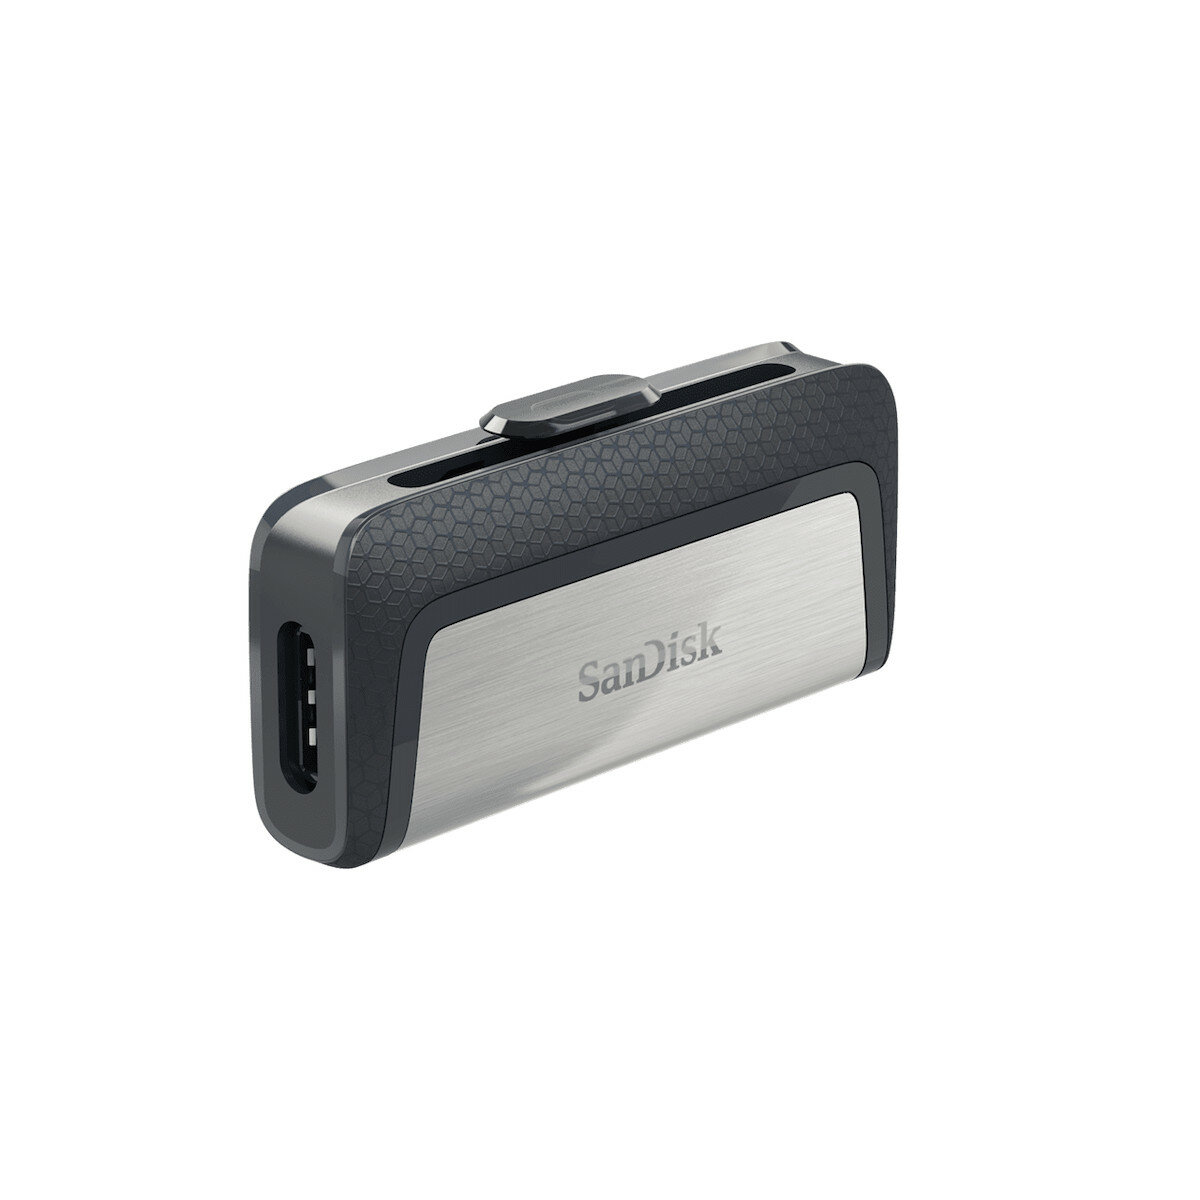 Pendrive SanDisk Ultra Dual Drive 256 GB widoczny prawym bokiem